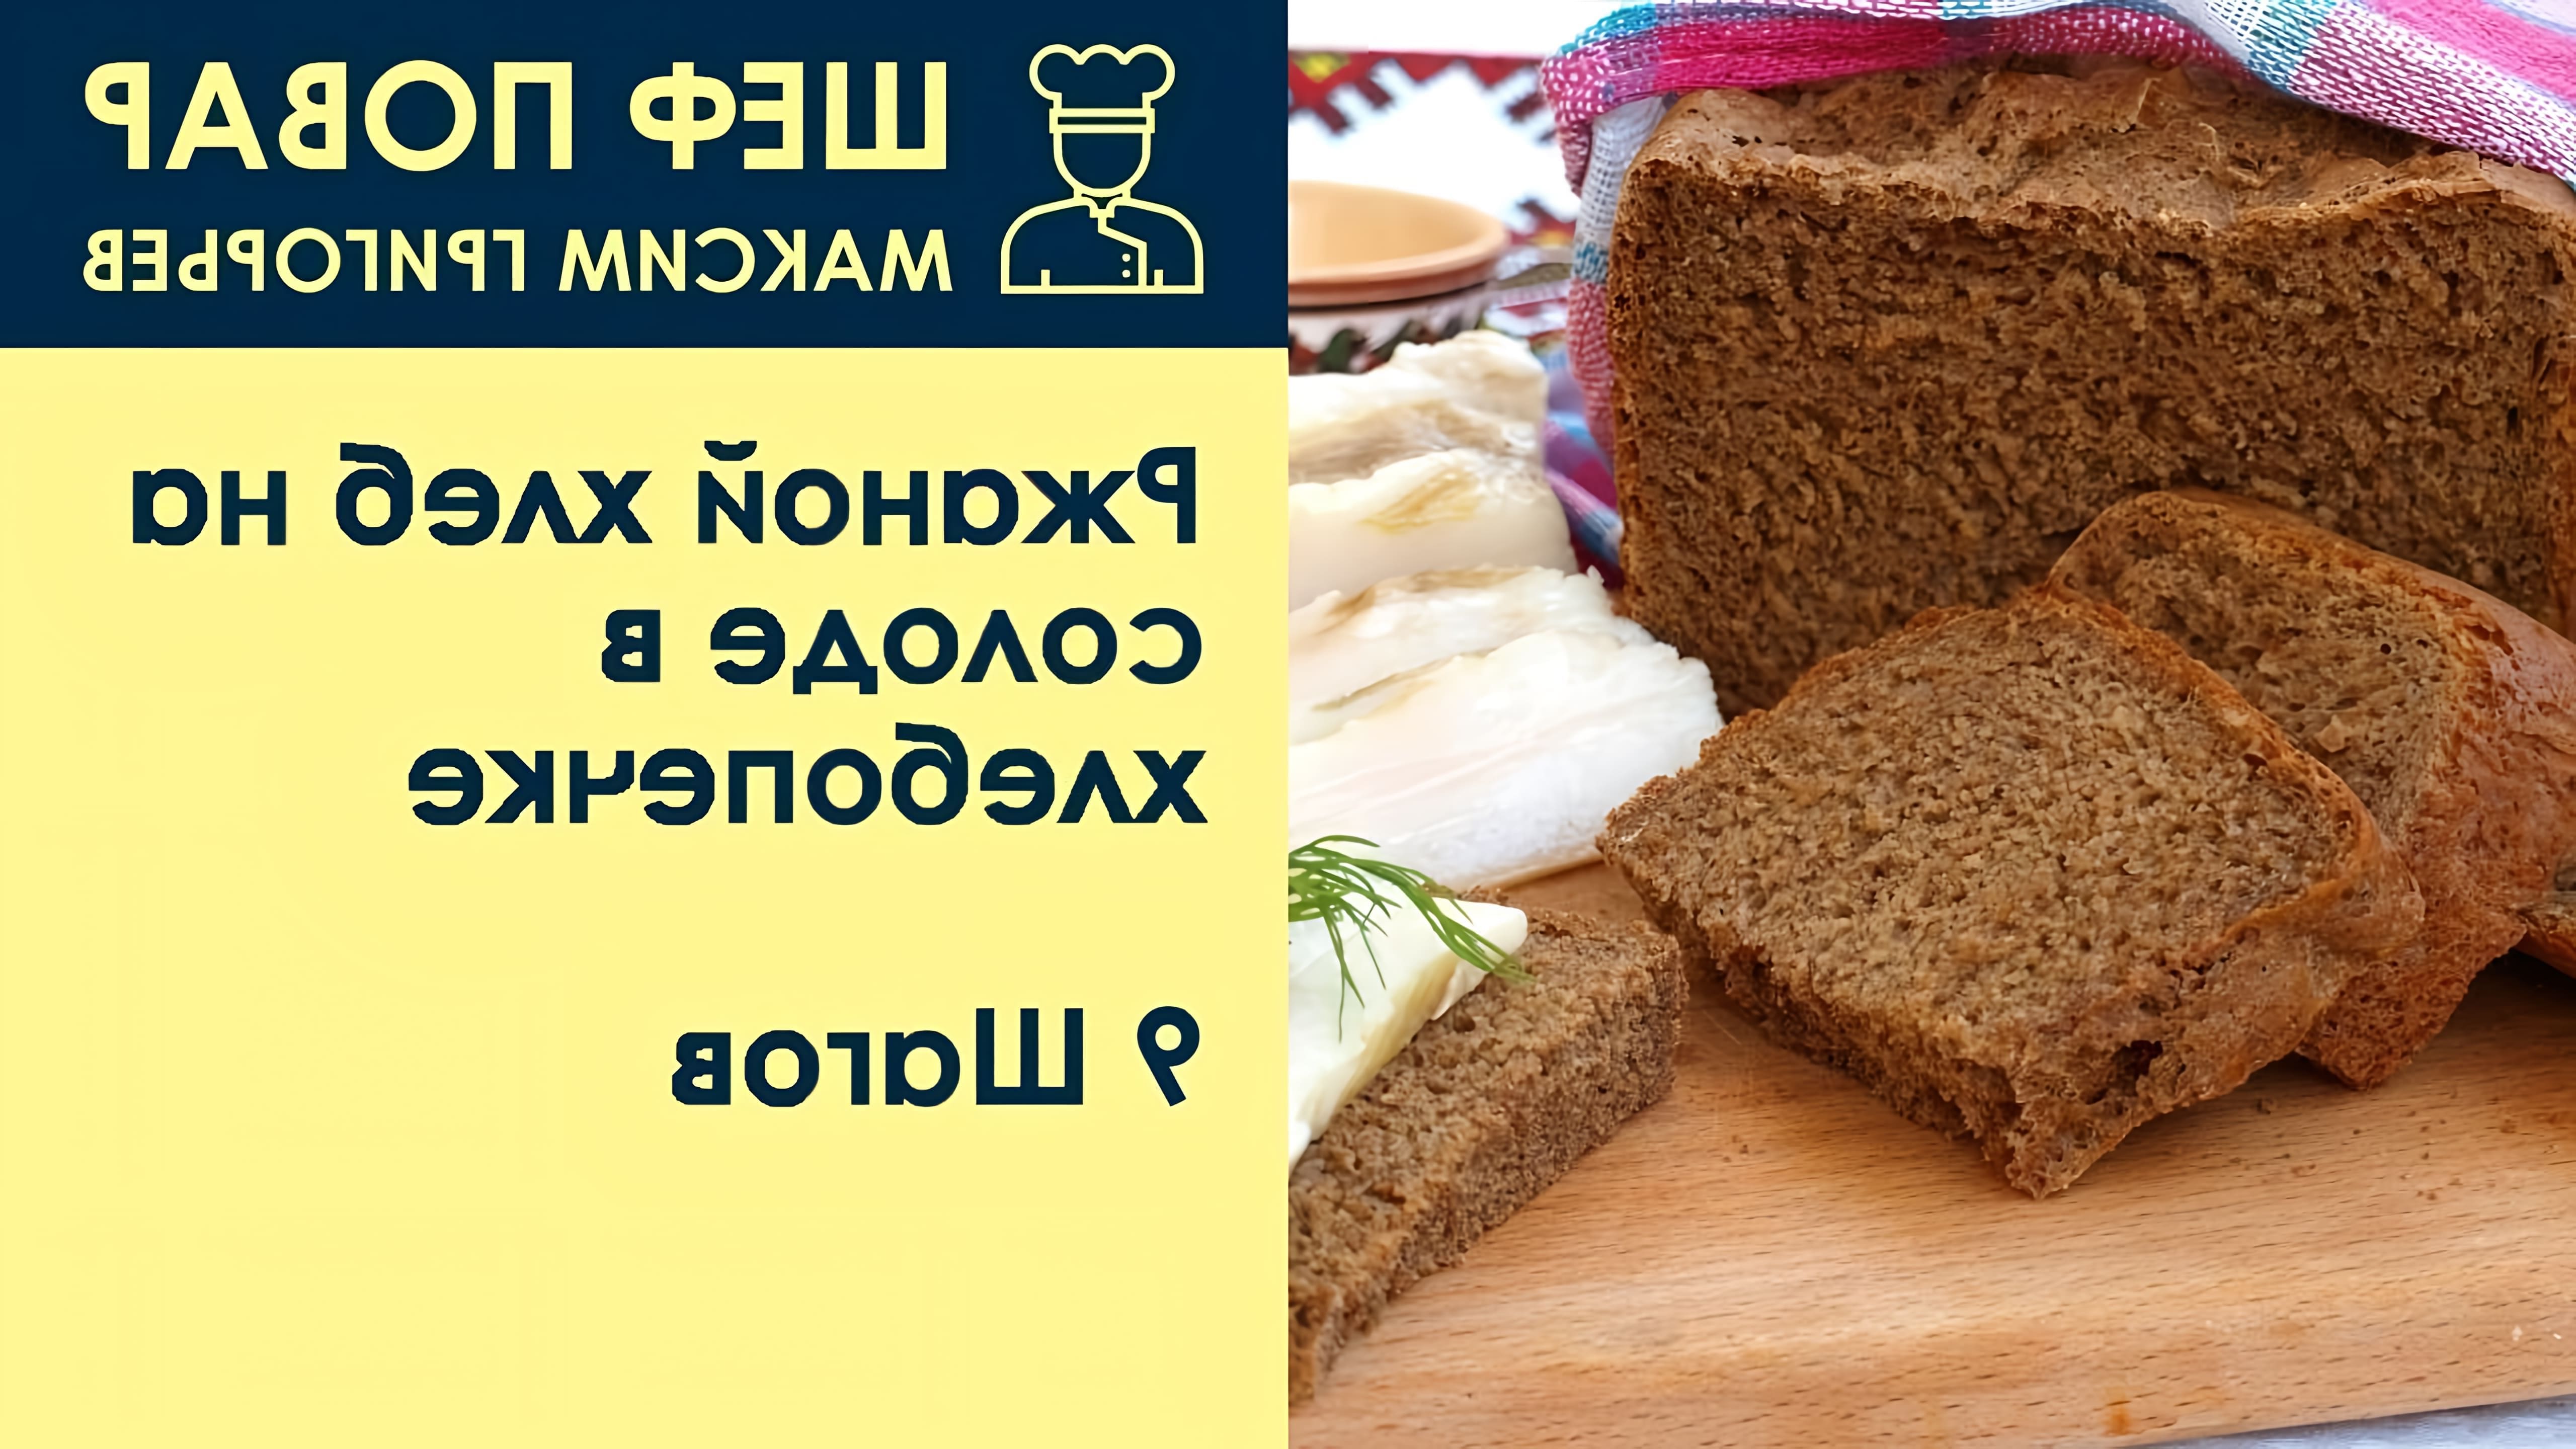 В данном видео шеф-повар Максим Григорьев демонстрирует рецепт ржаного хлеба на солоде в хлебопечке